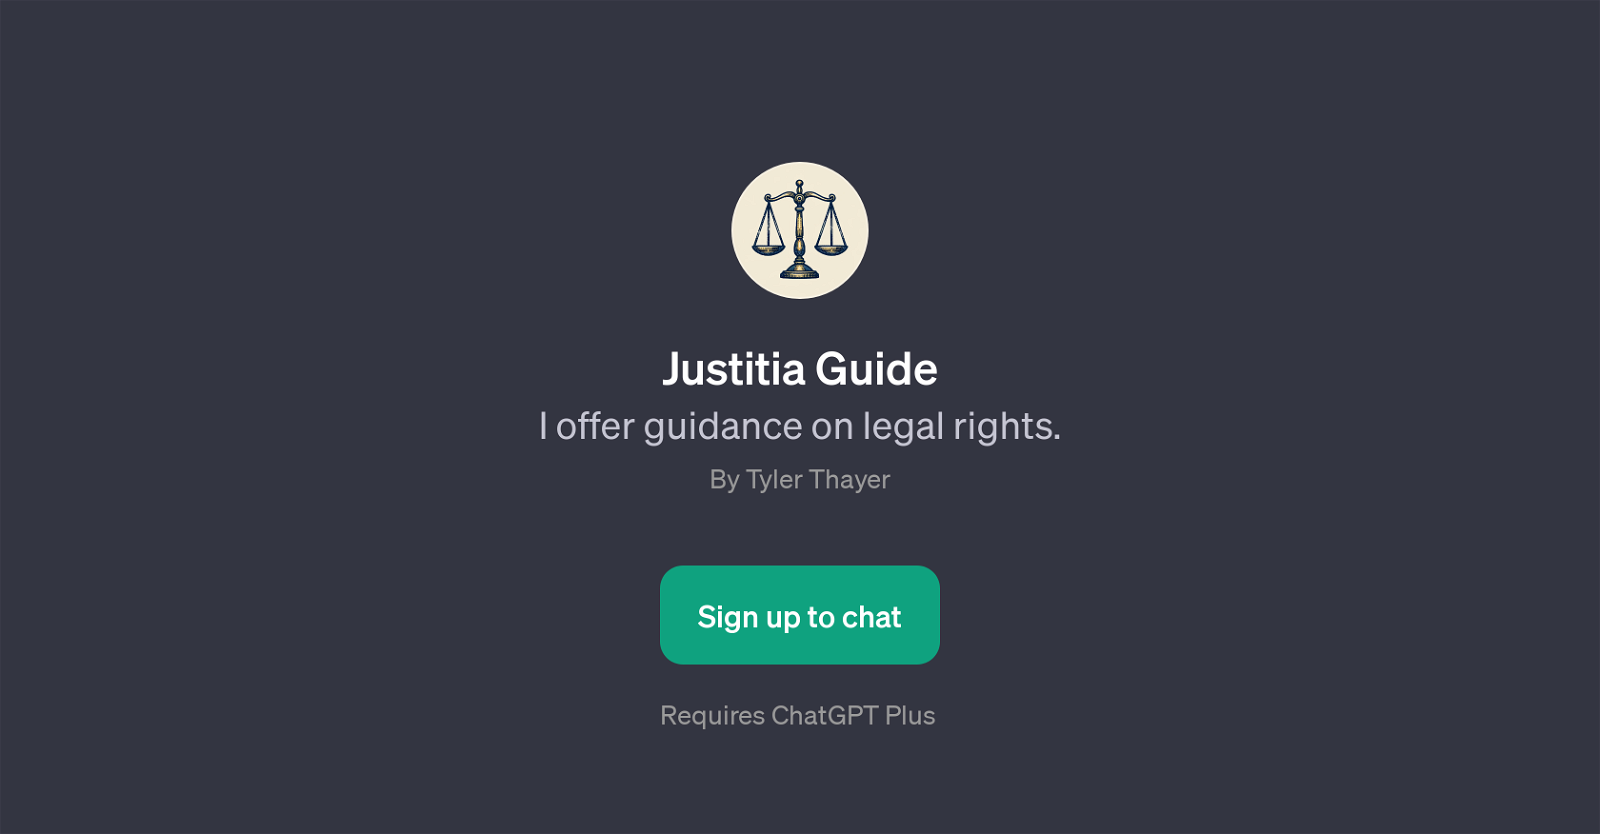 Justitia Guide website